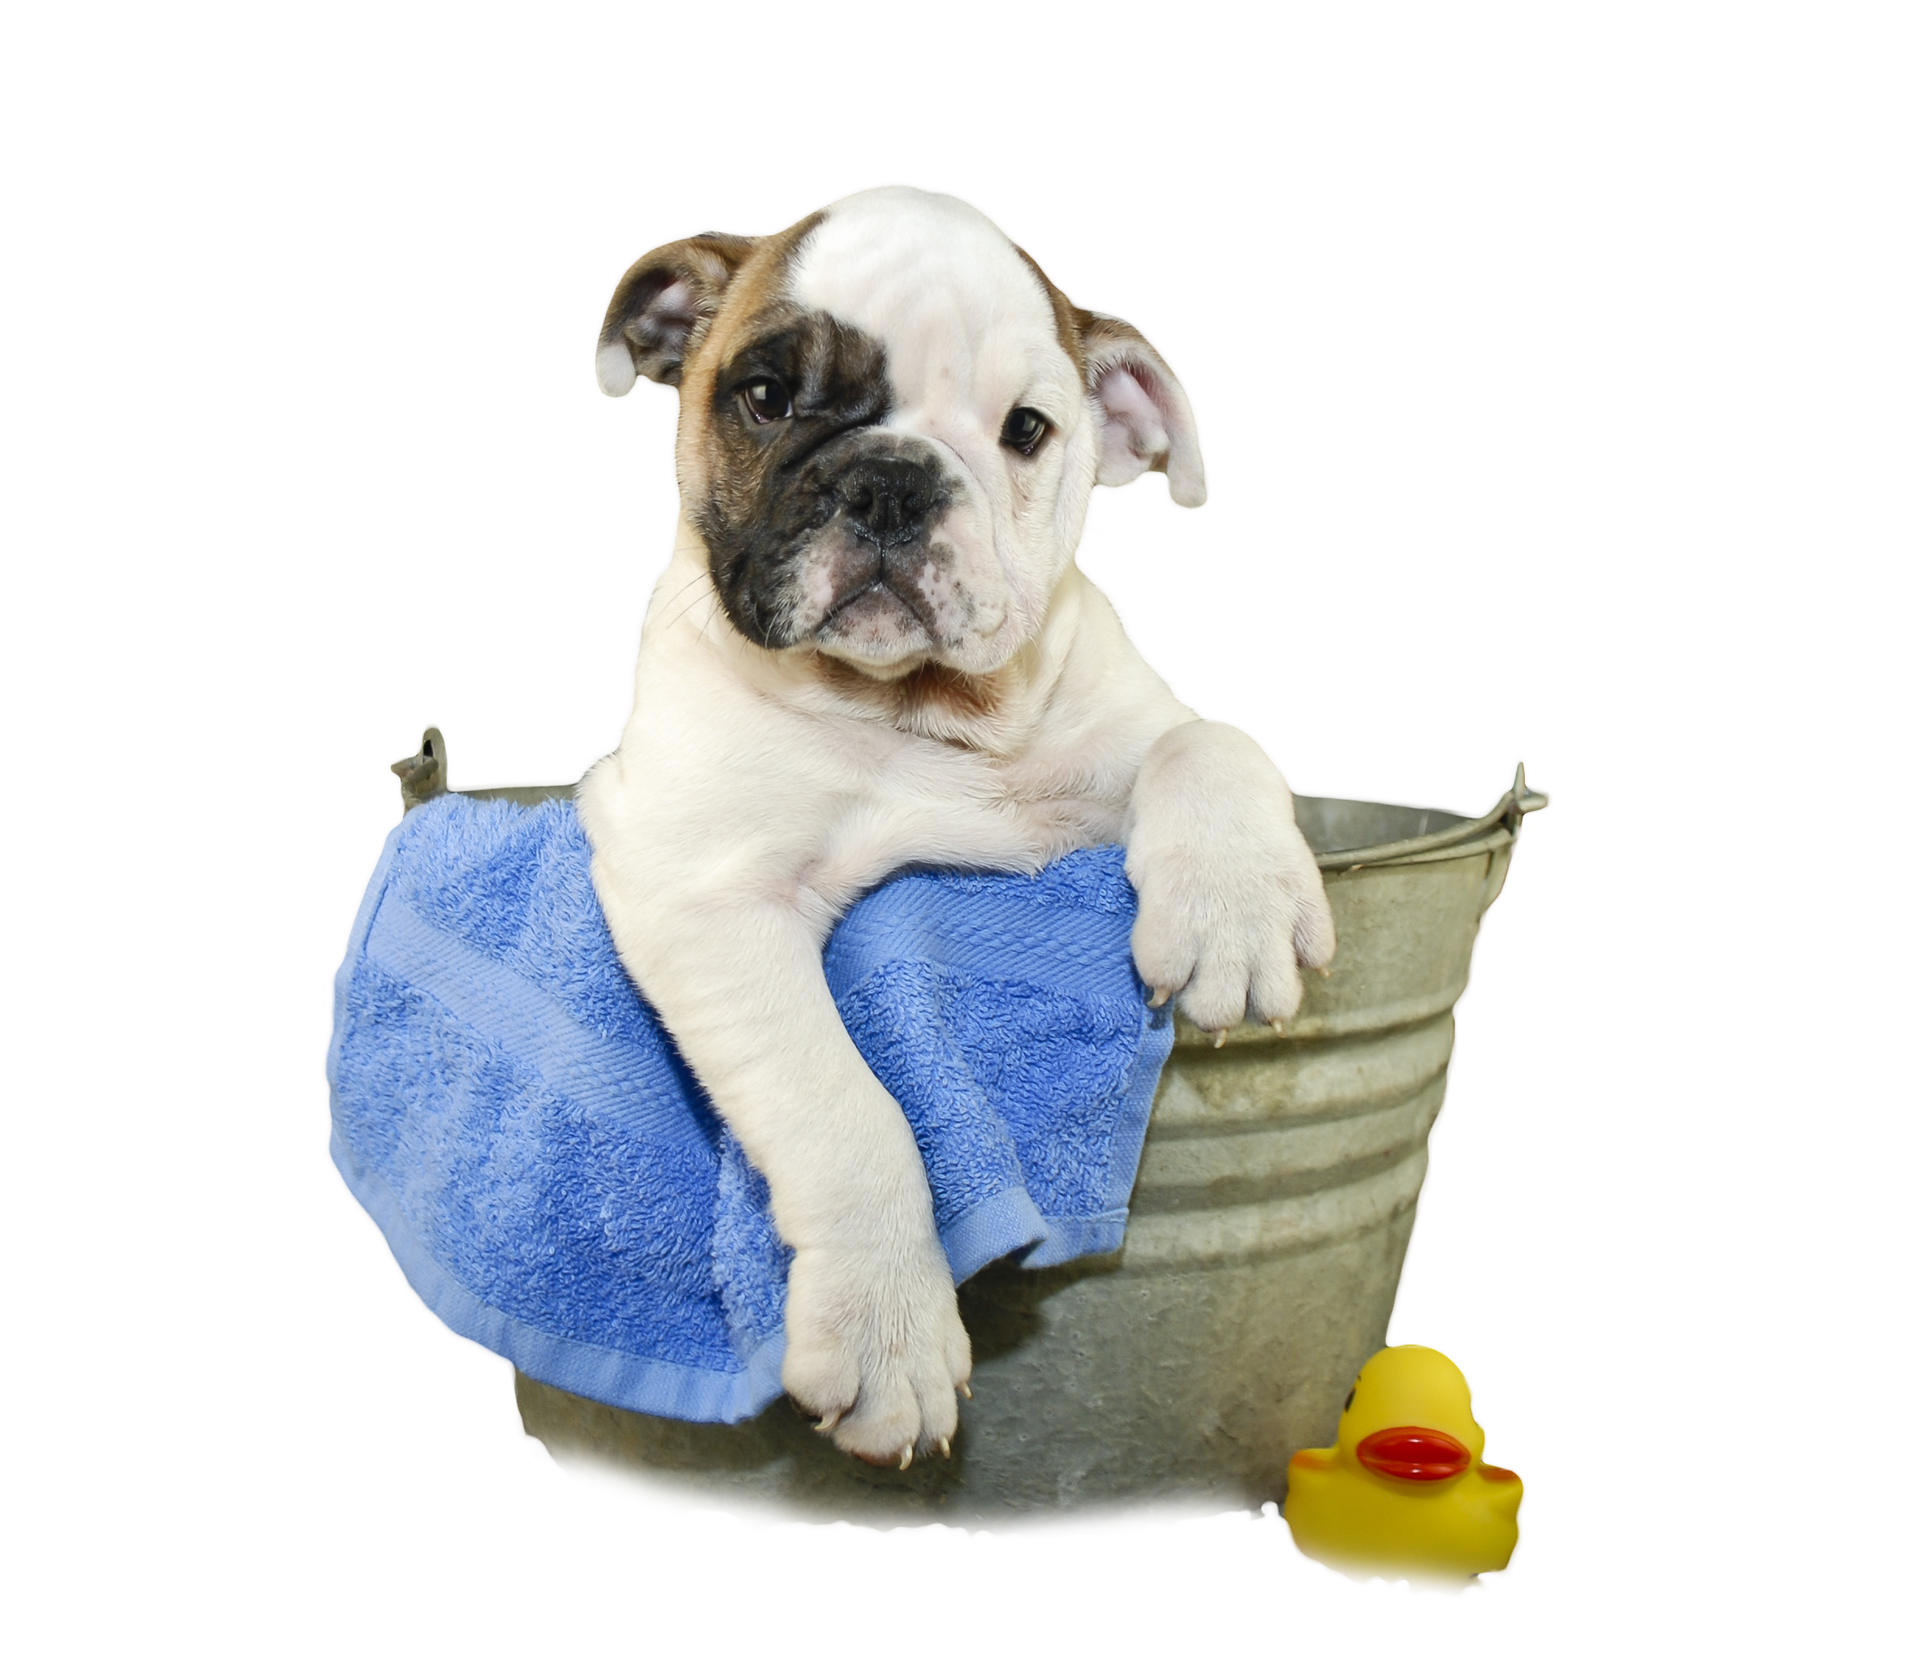 Jack wash the dog. Собака моется. Бульдог в ванной. Мытьё питомцев. Озоновая ванна для собак.